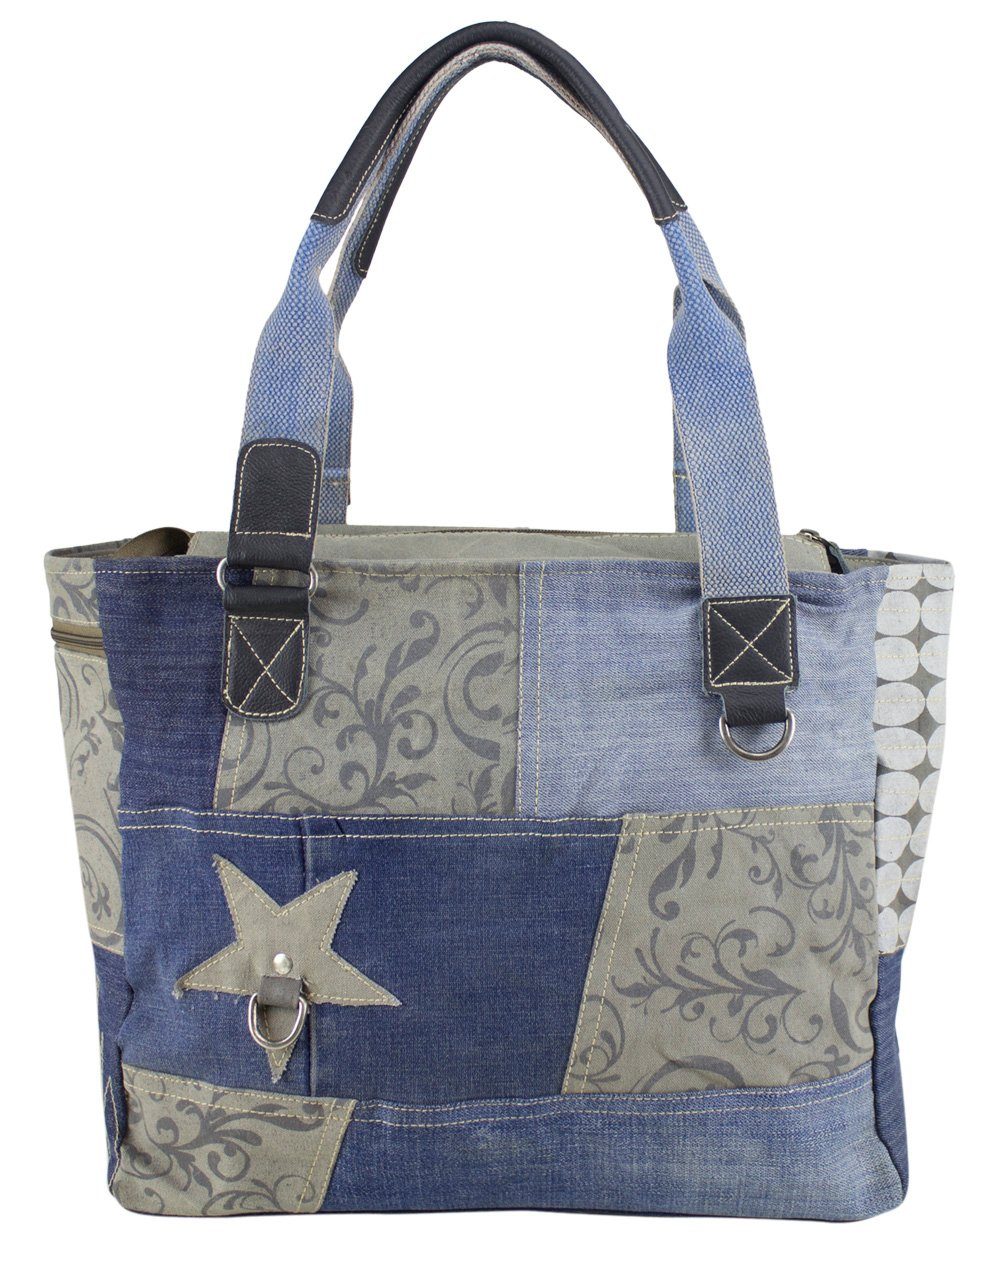 Sunsa Handtasche Damen Handtasche. Große Schultertasche aus recycelte Jeans und grau Canvas. Tasche 52226, recycelte Materialien